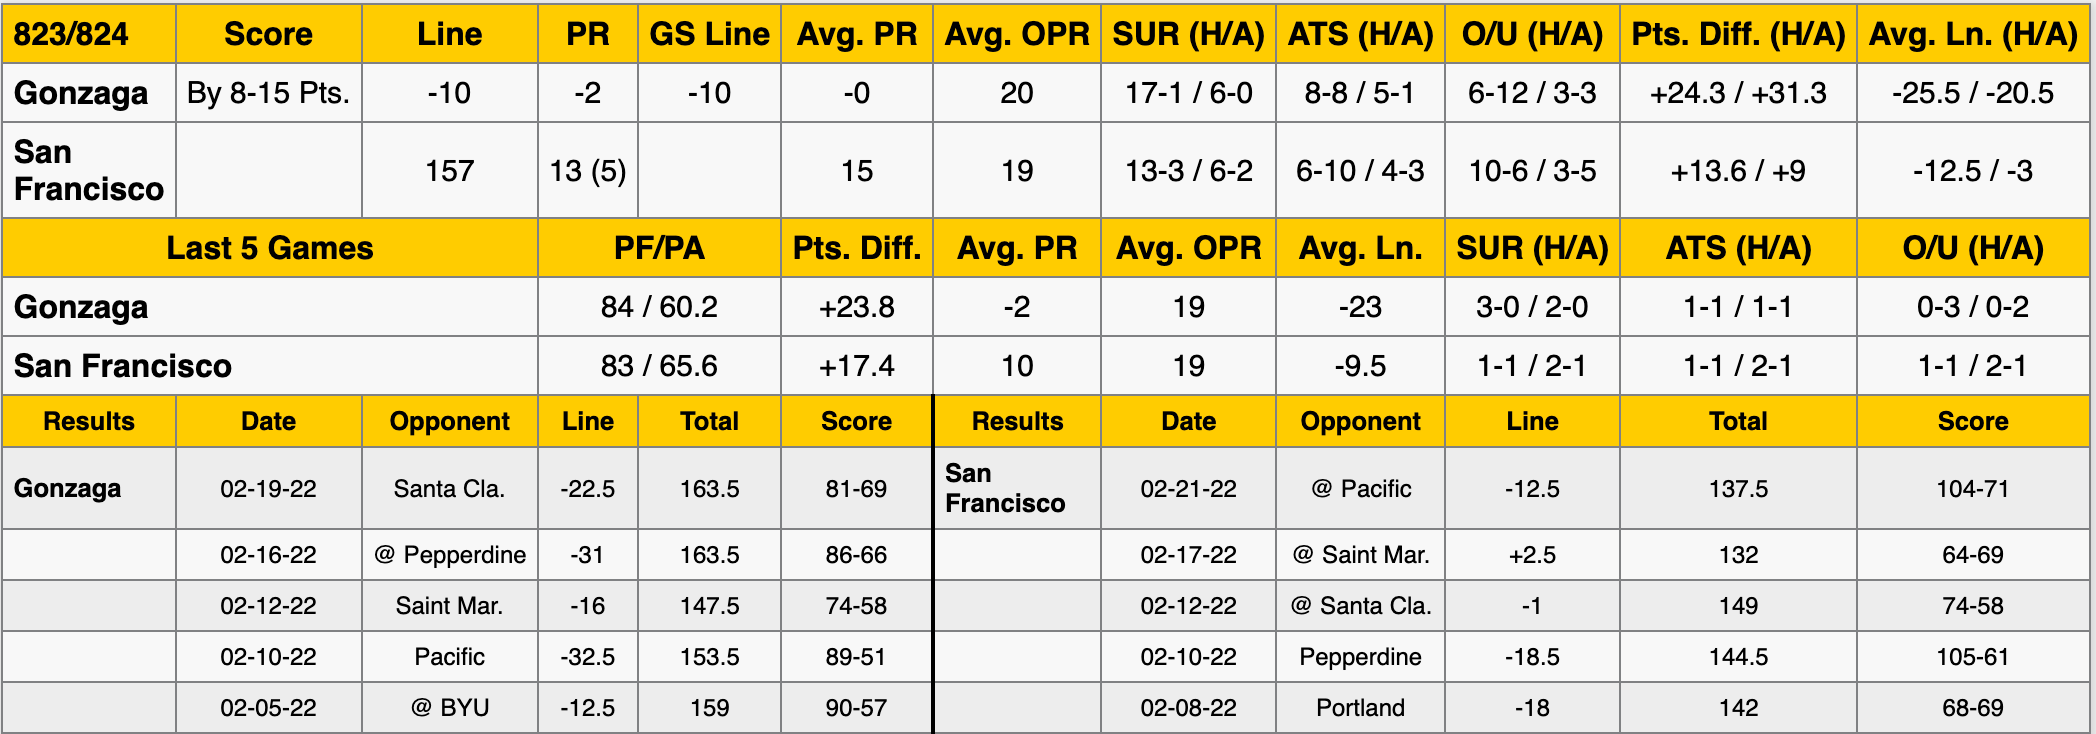 Gonzaga vs San Francisco Stats